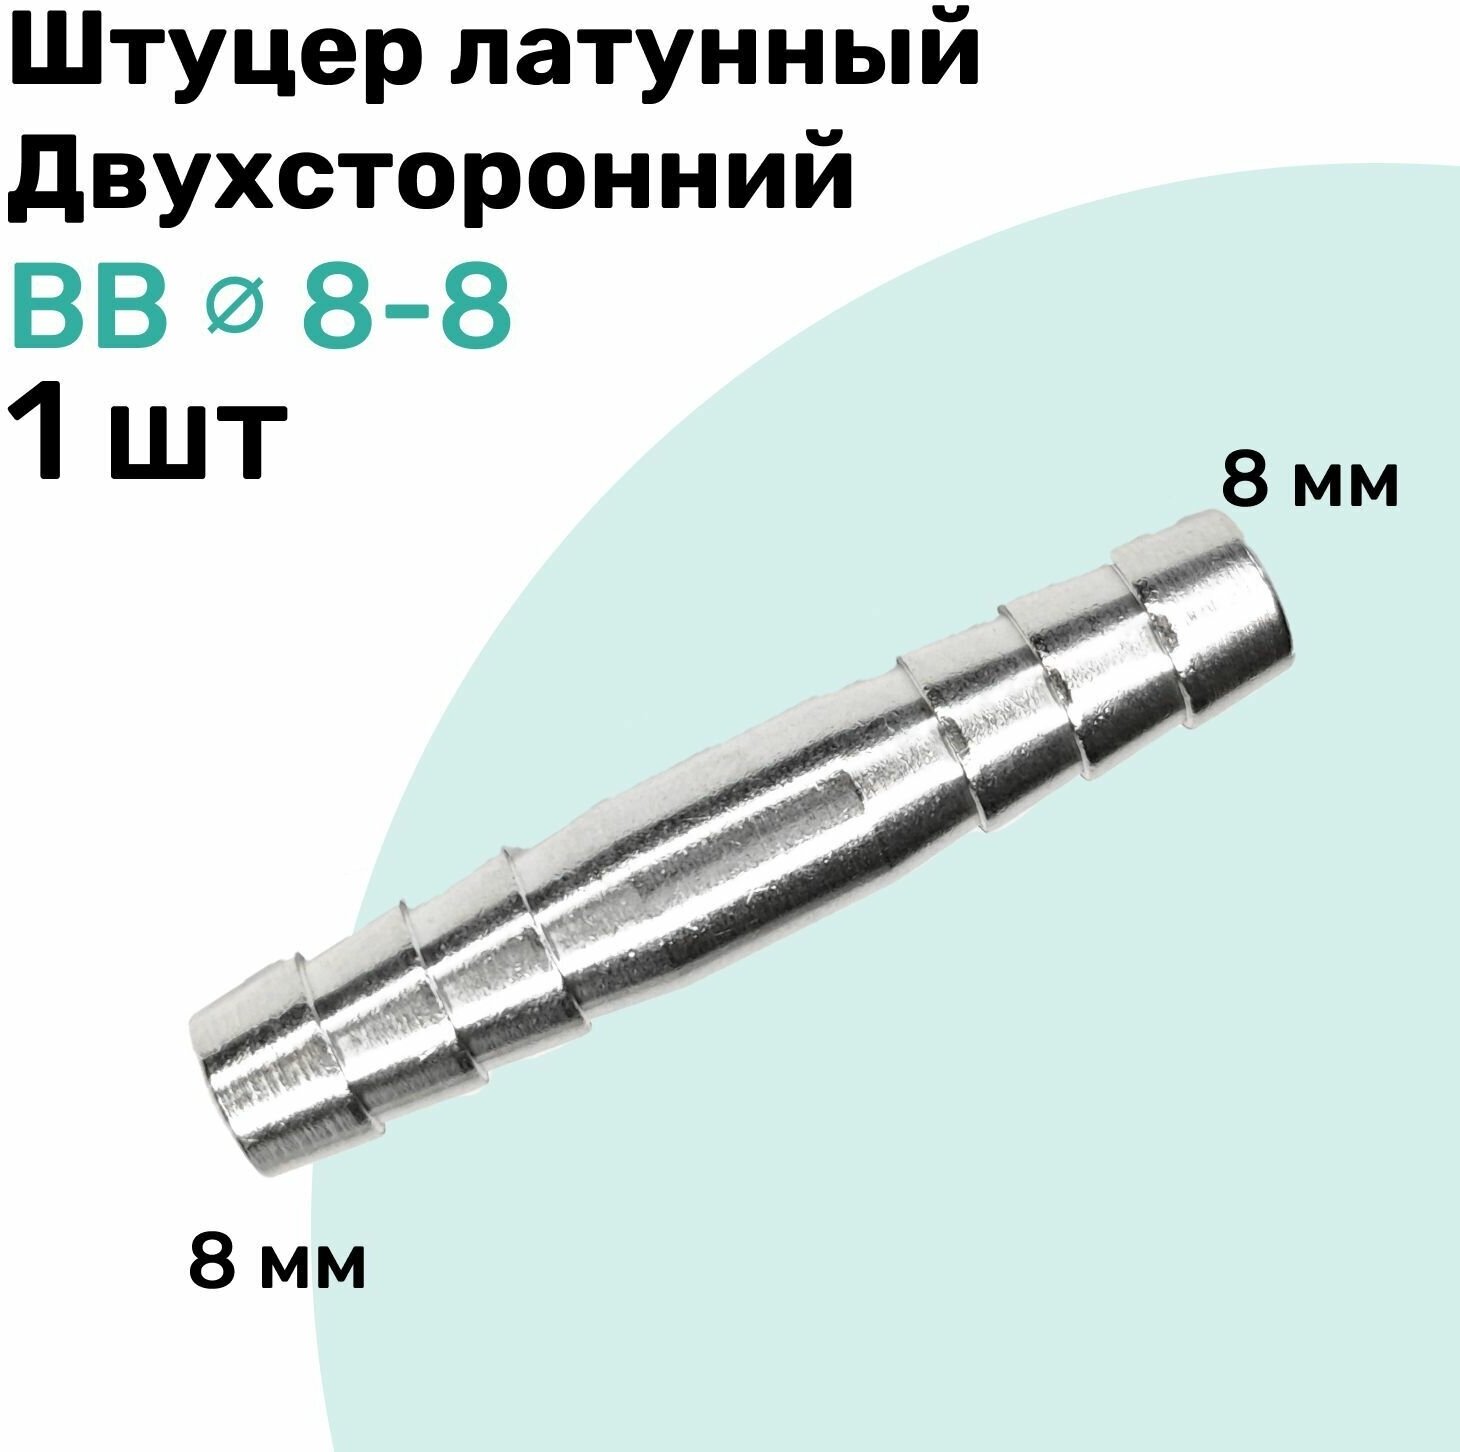 Штуцер латунный елочка двухсторонний BB 8мм-8мм Пневмоштуцер NBPT